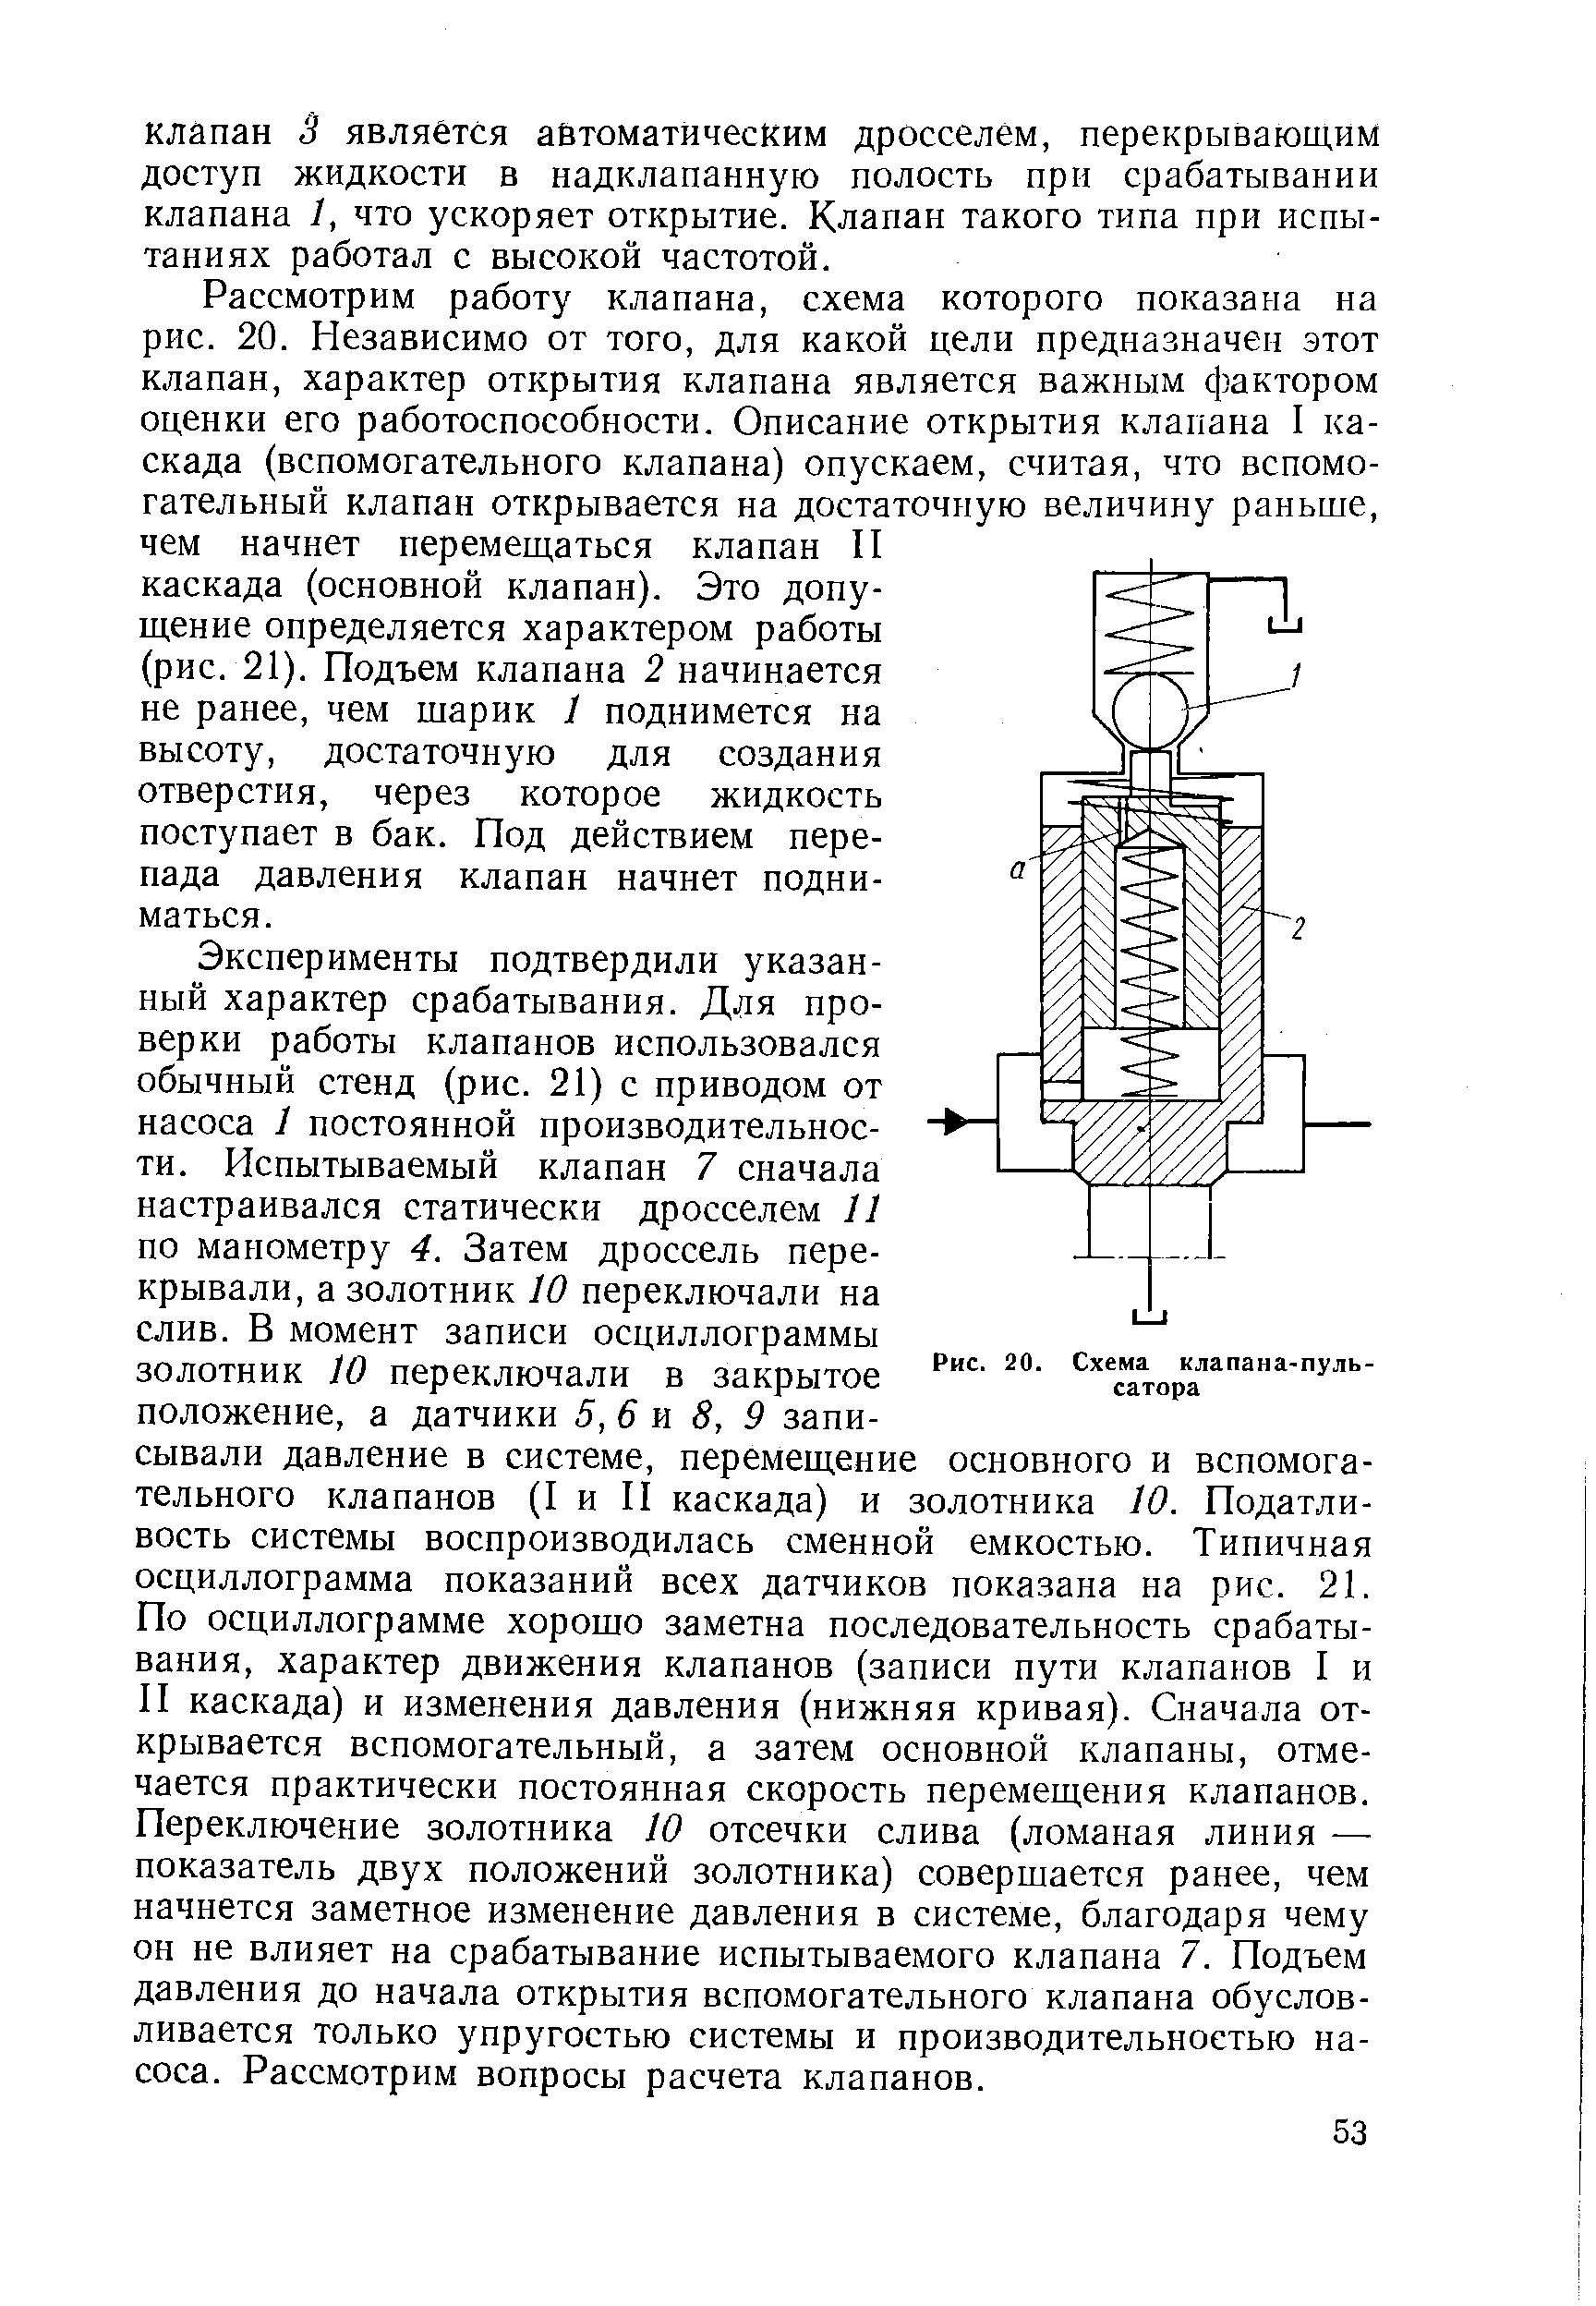 Рис. 20. Схема клапана-пуль-сатора
